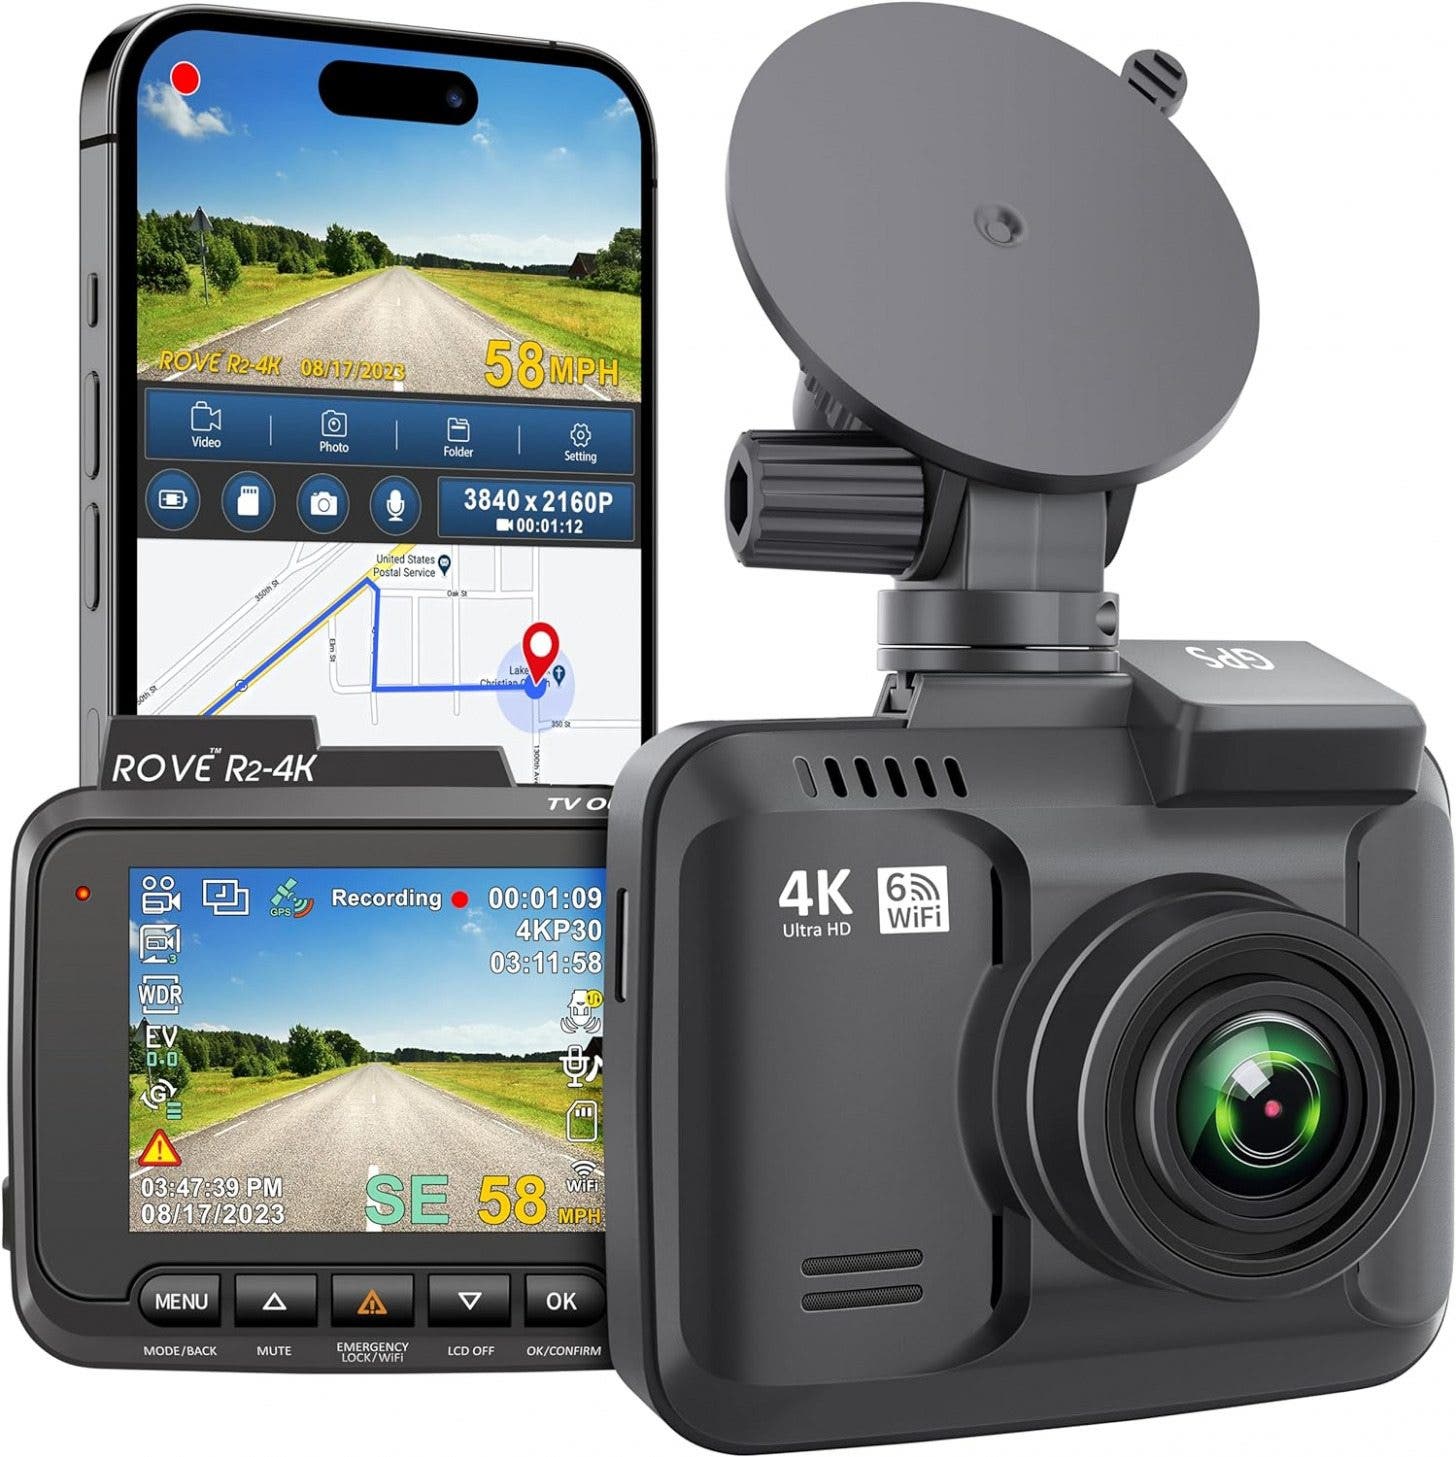 Rove R2-4K Dash Cam con WiFi e GPS integrati (19,99)